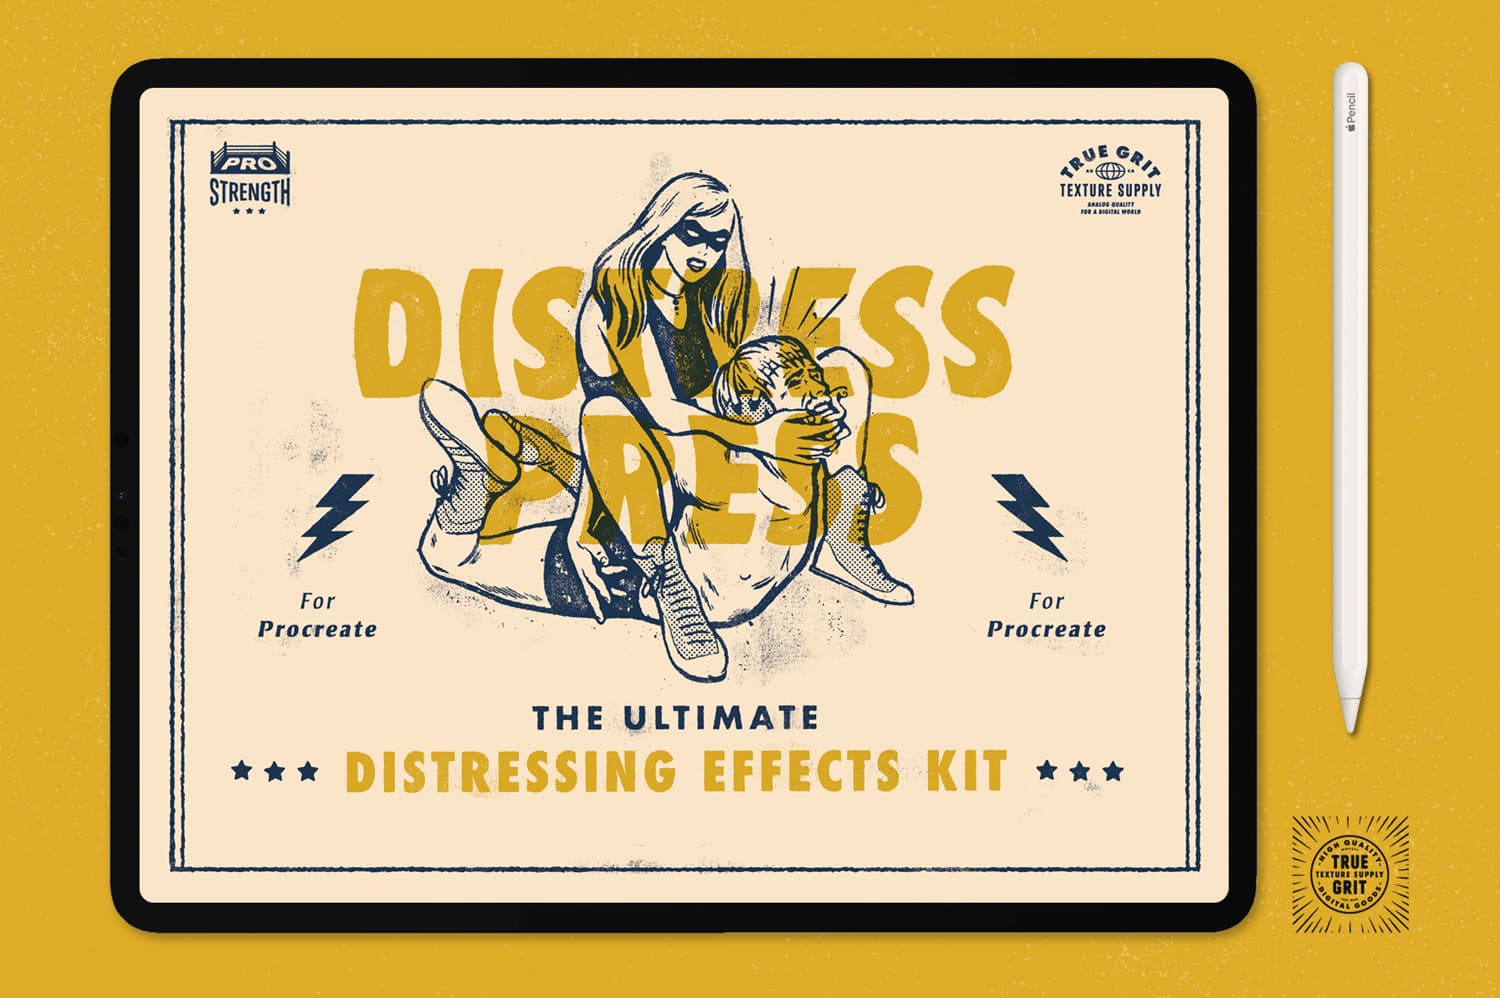 distress press photoshop download